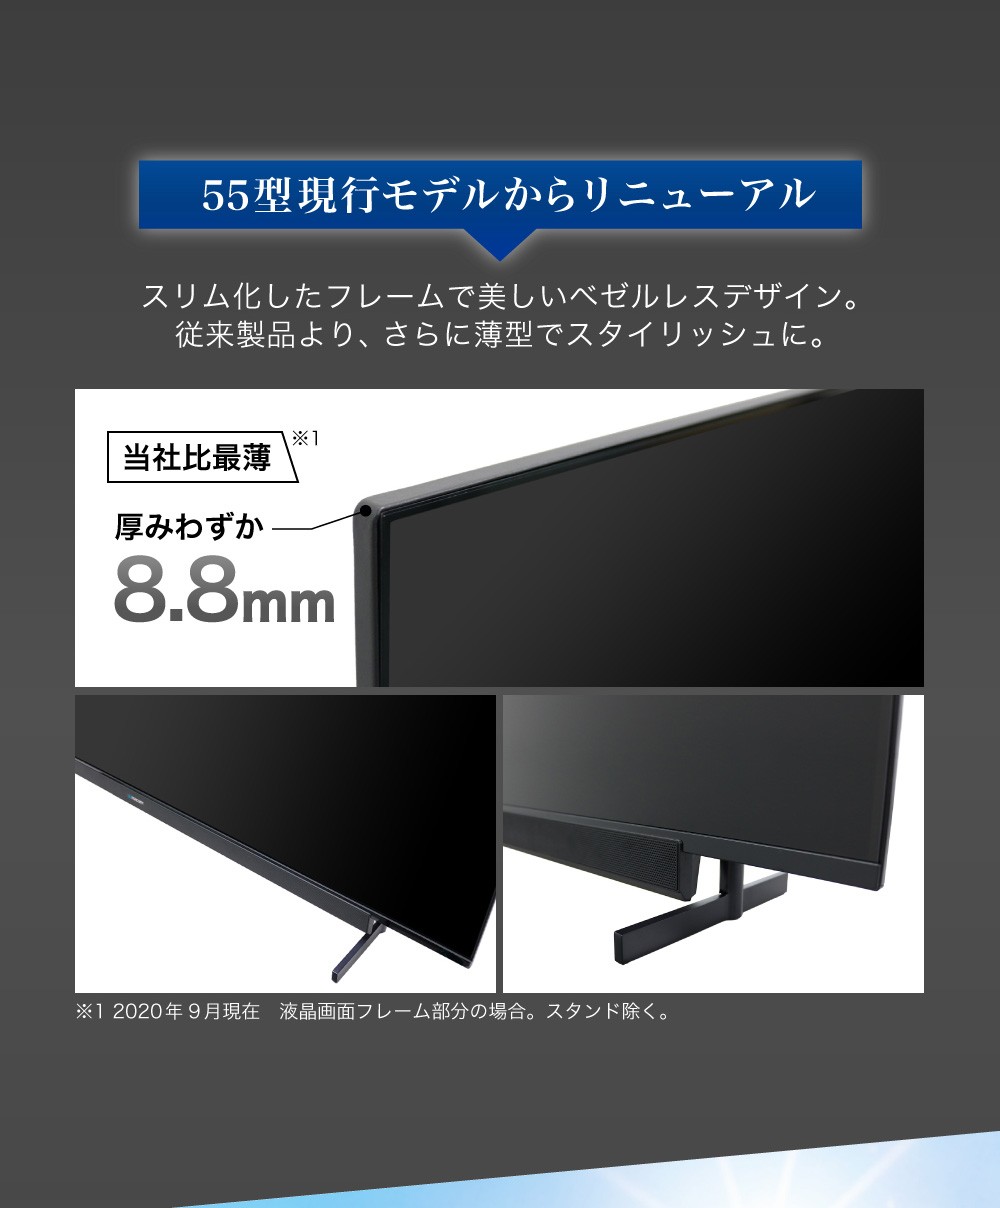 激安超安値 4K対応 55型 液晶テレビ maxzen マクスゼン JU55SK04